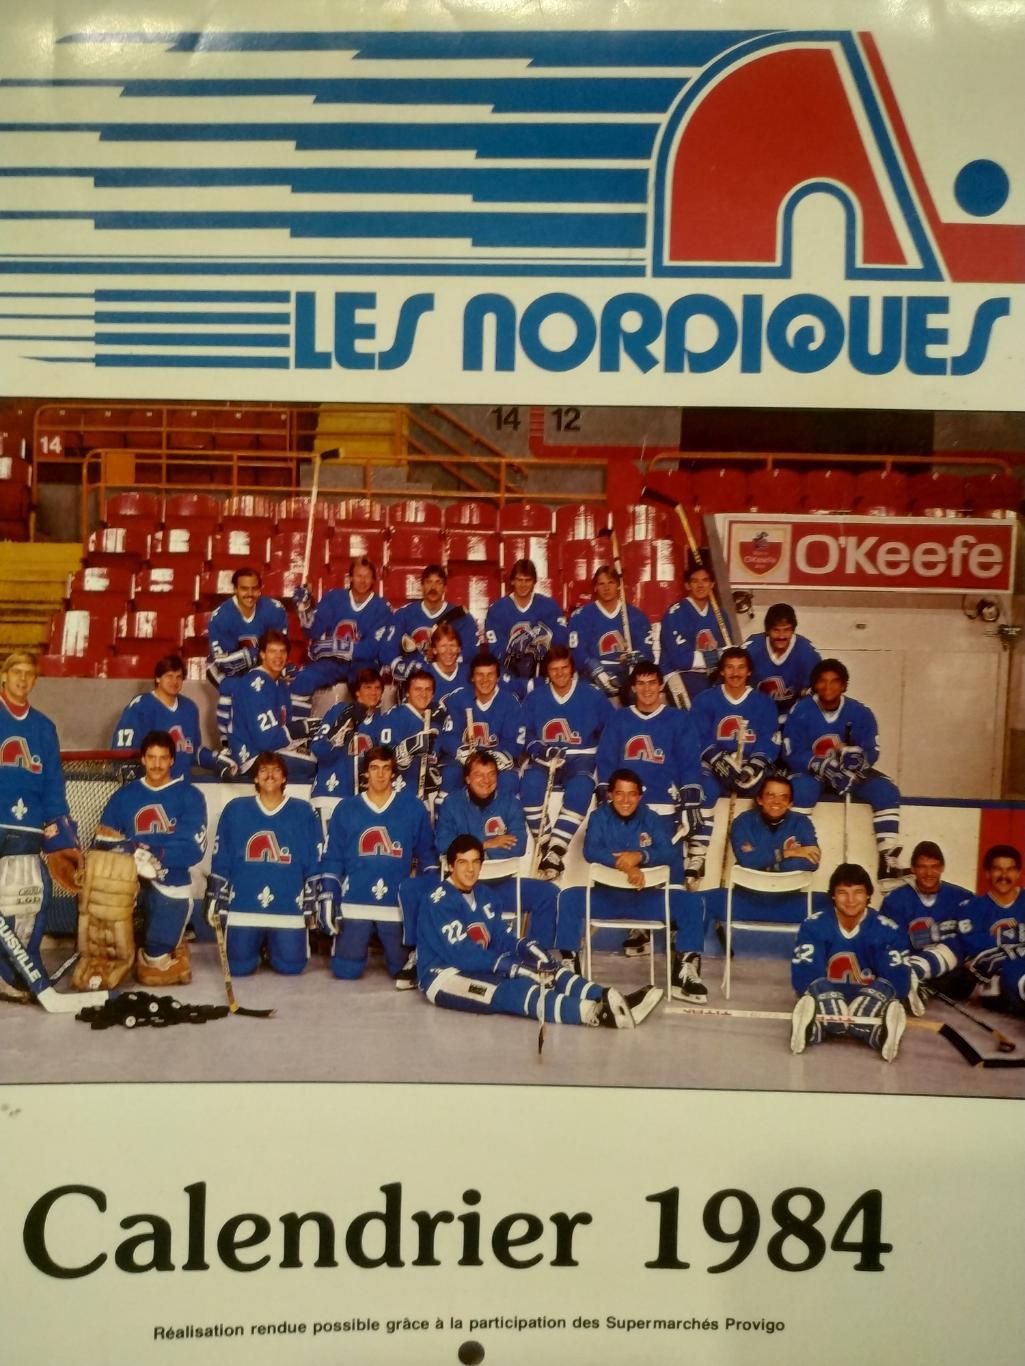 ХОККЕЙ КАЛЕНДАРЬ НХЛ КВЕБЕК НОРДИКС 1984 NHL LES NORDIQUES OFFICIAL CALENDAR